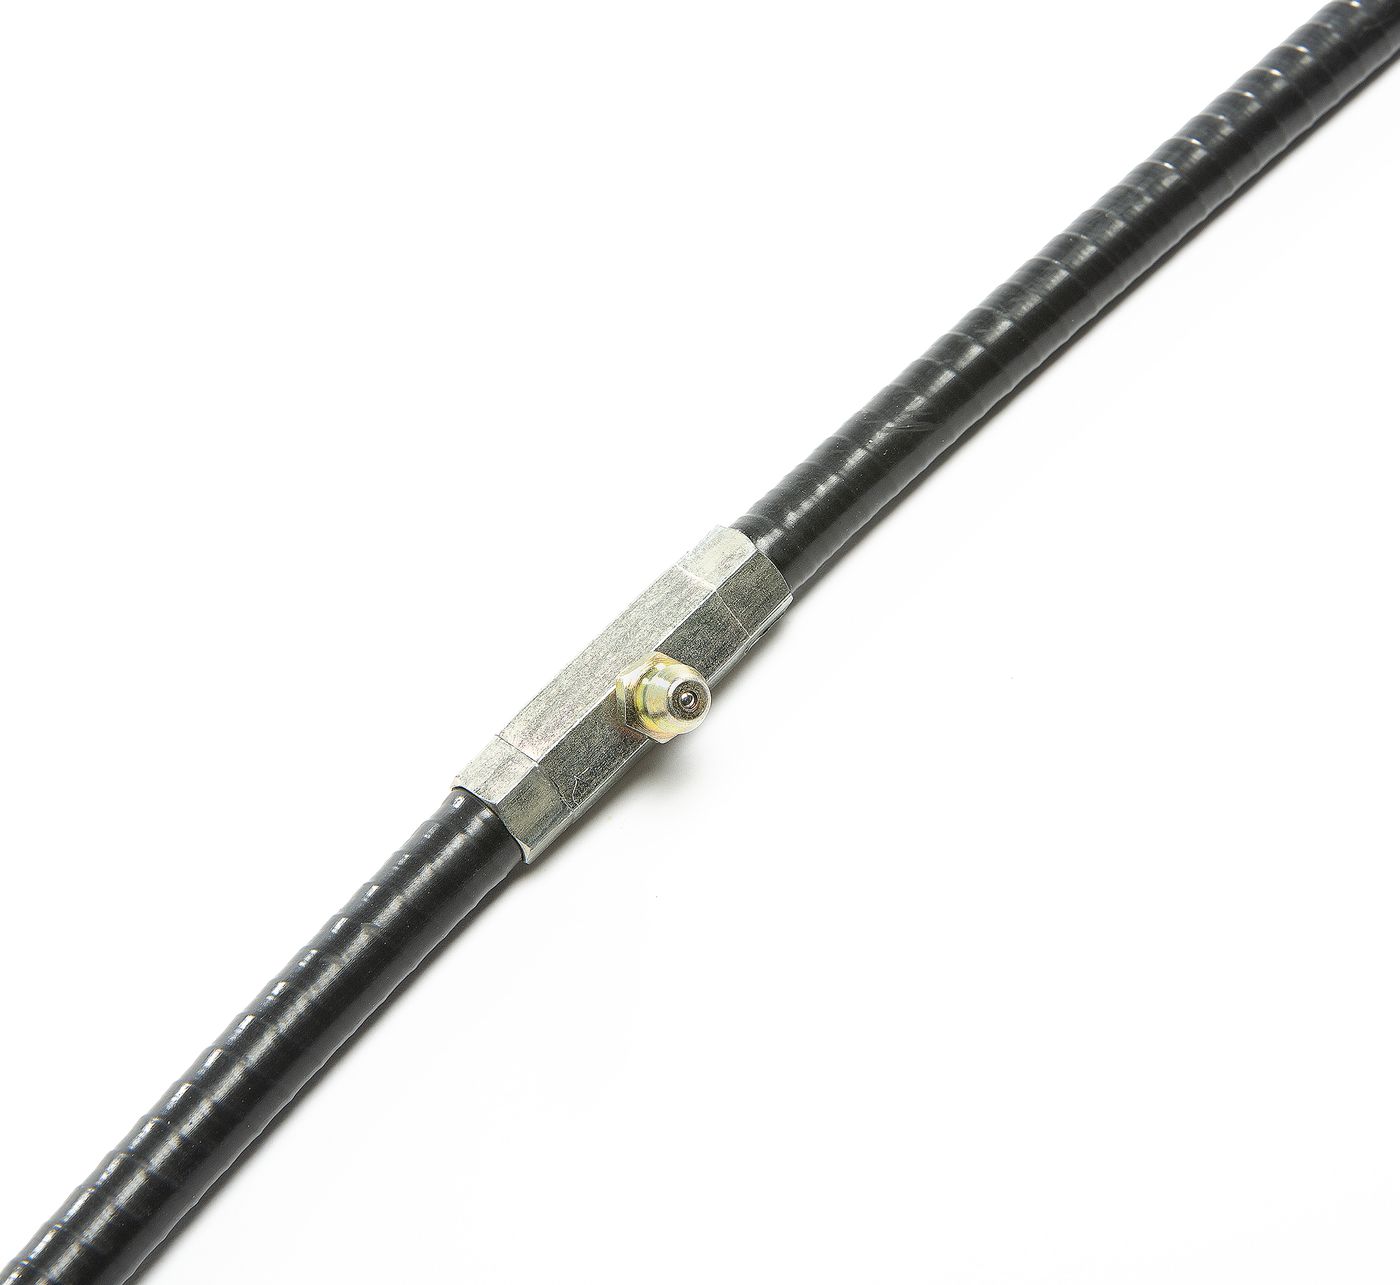 Handbremsseil
Handbrake cable
Câble de frein à main
Cable del 